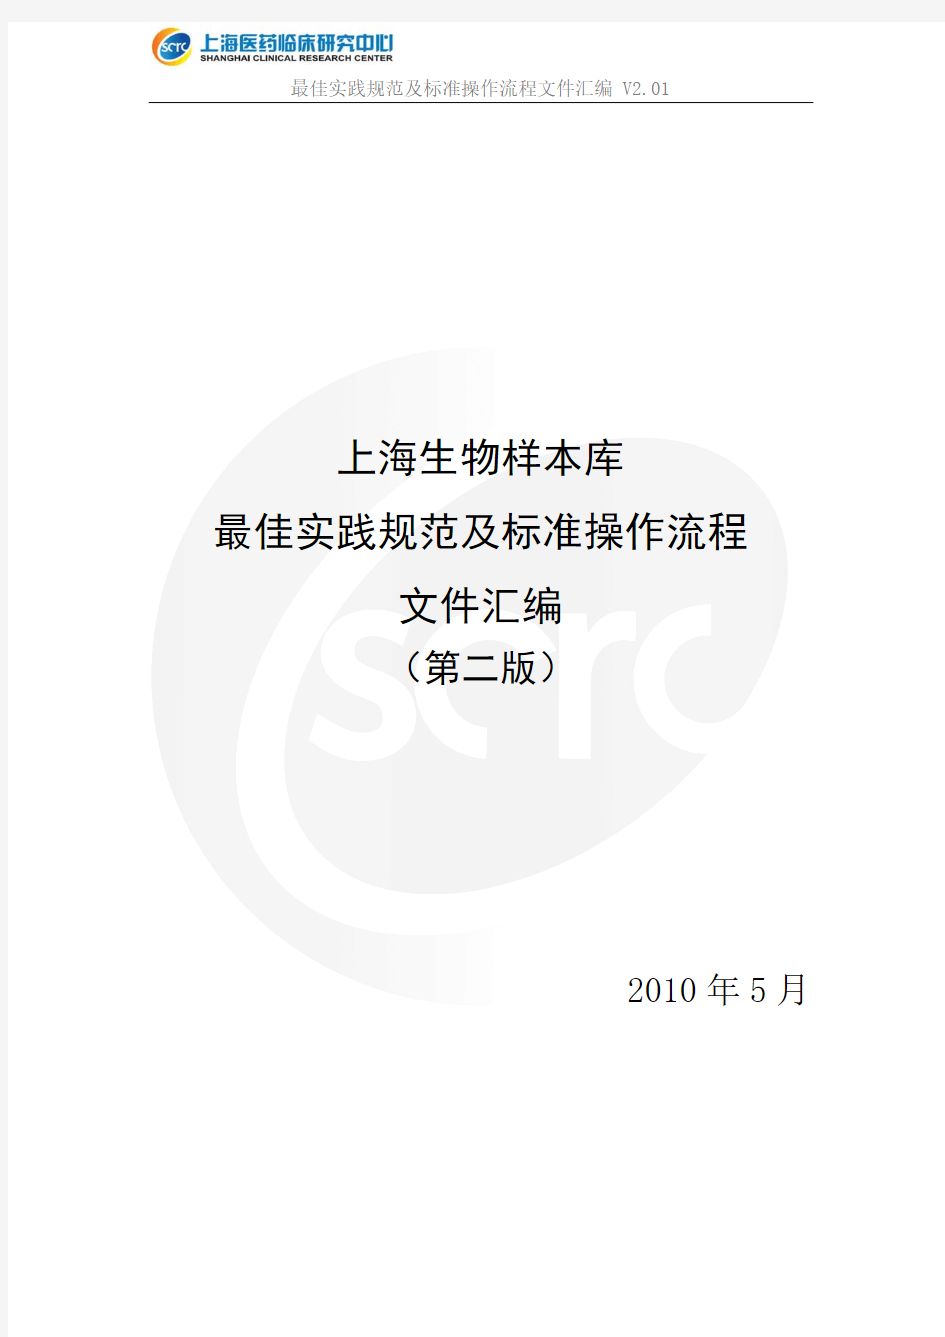 上海生物样本库 最佳实践规范及标准操作流程 文件汇编